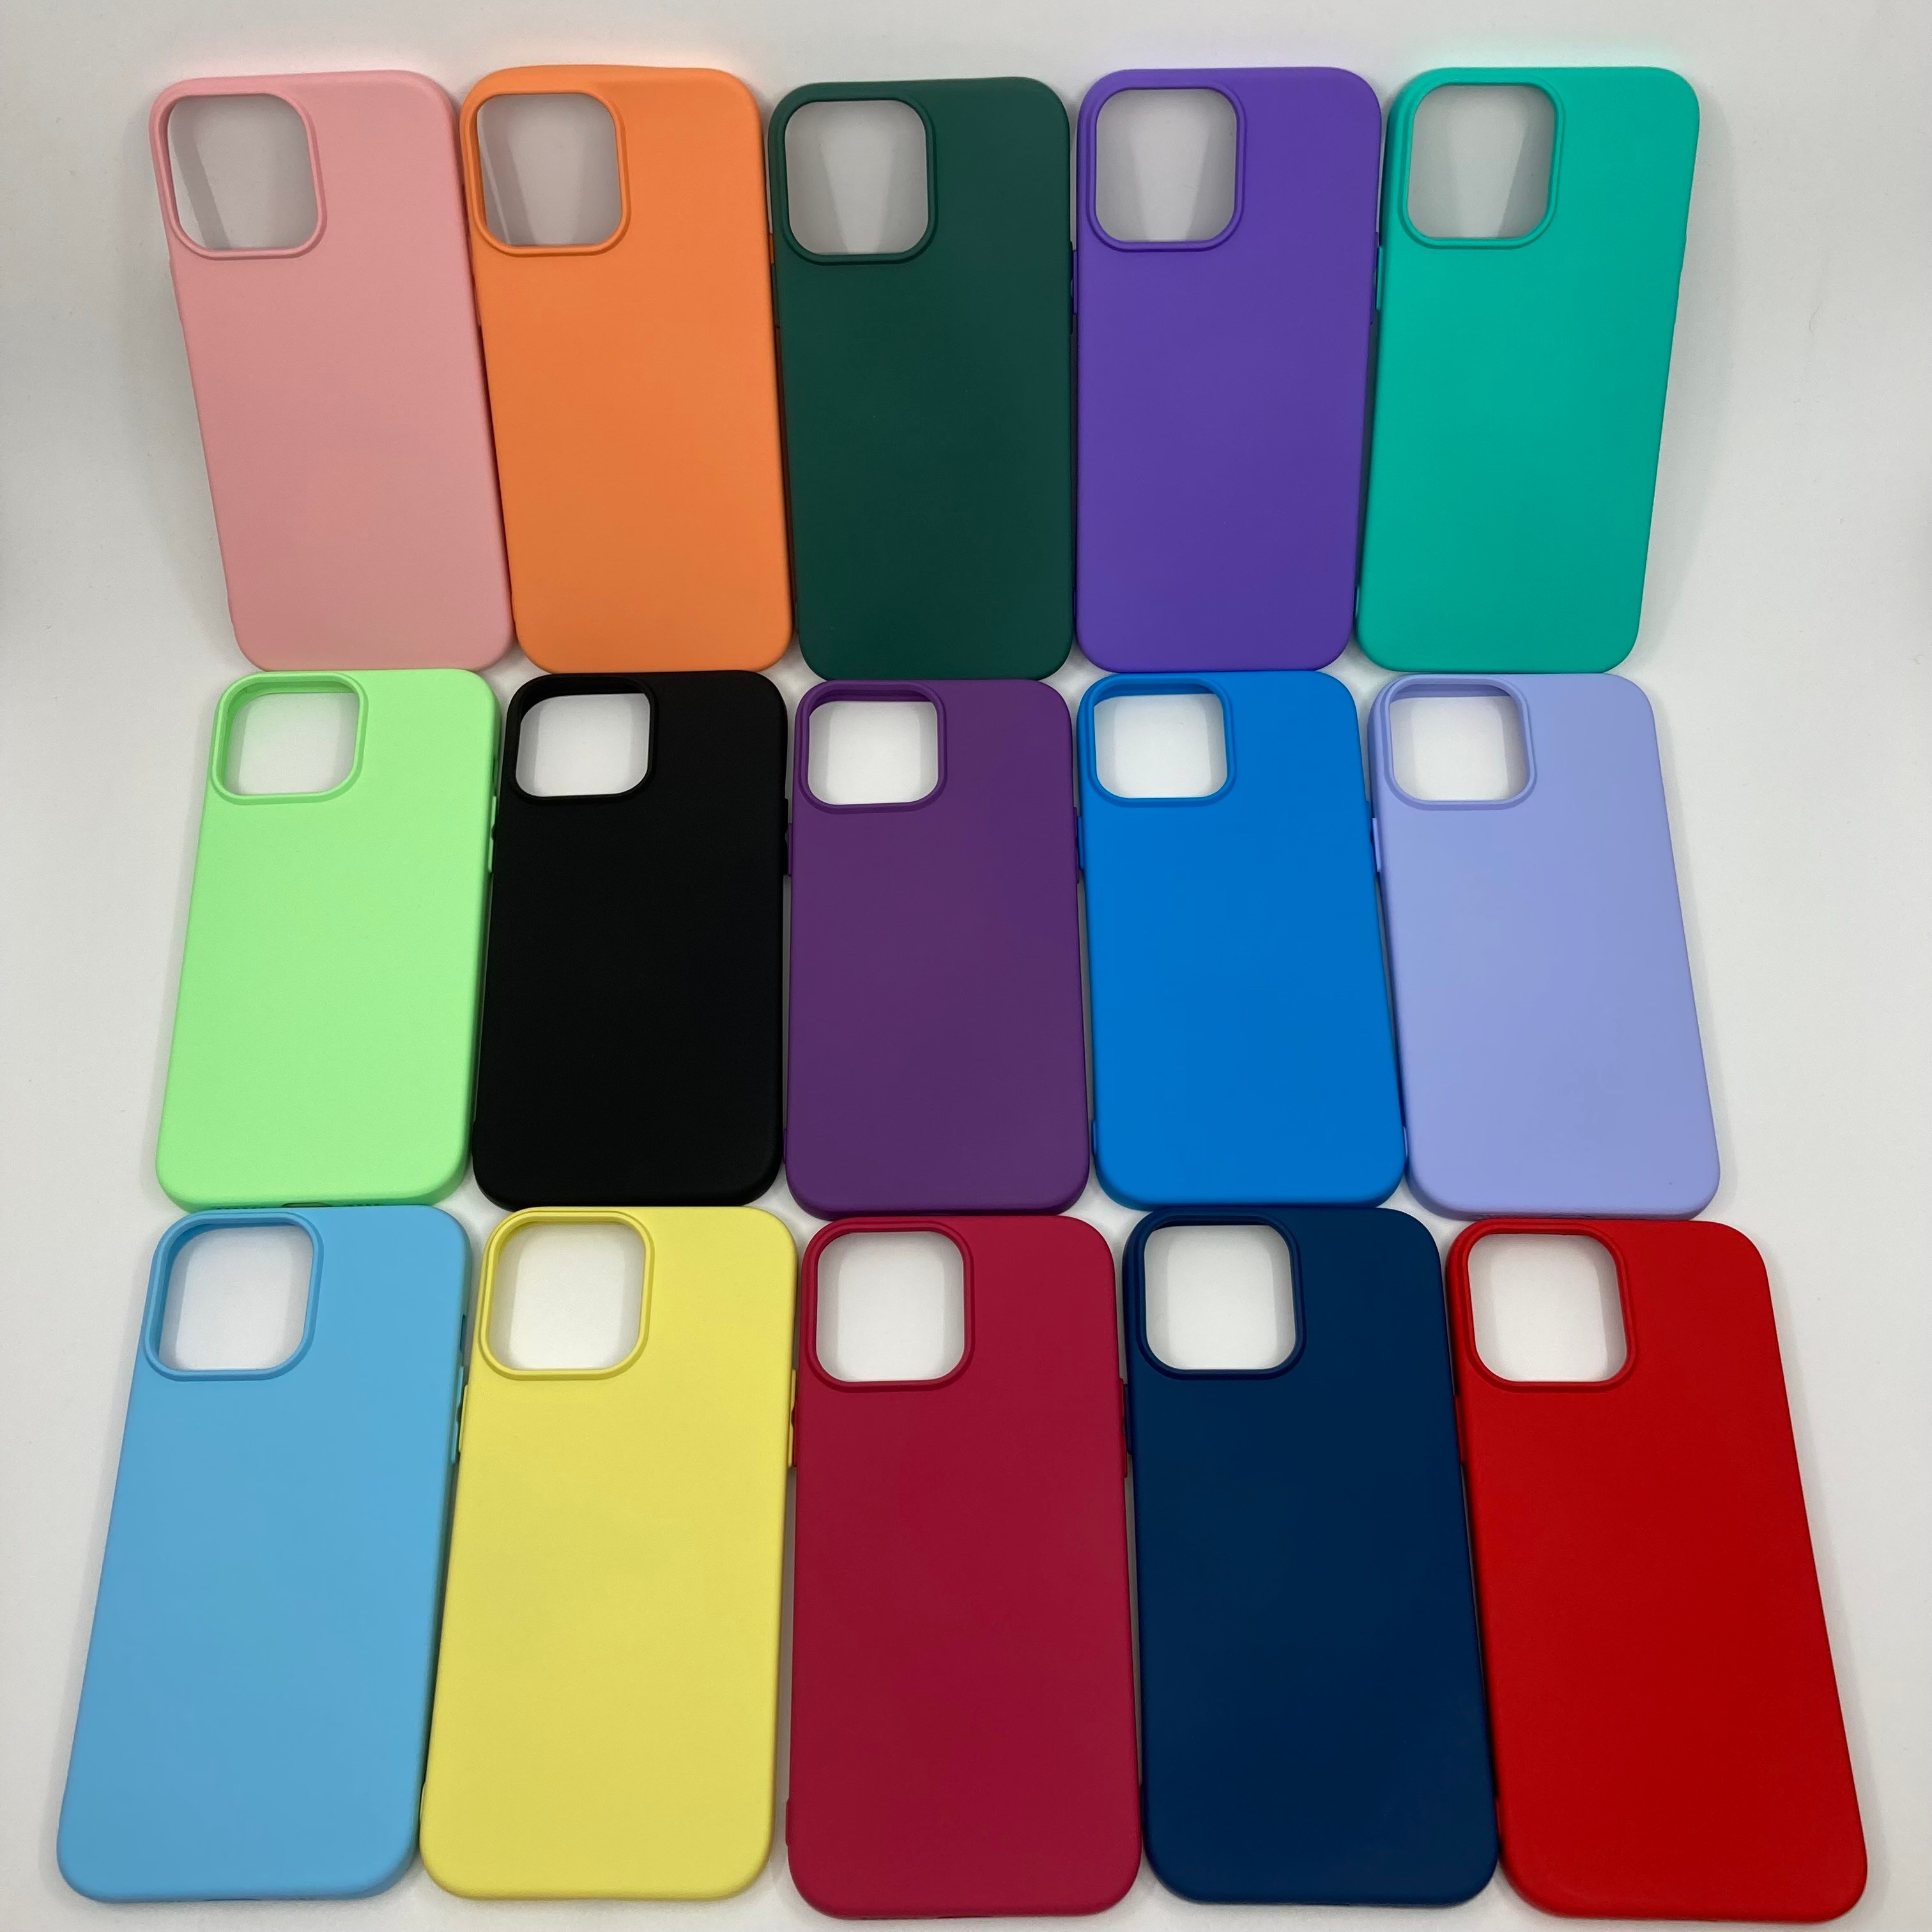 iPhone 13 Pro Max İçi Kadife Pastel Renk Silikon Kılıf